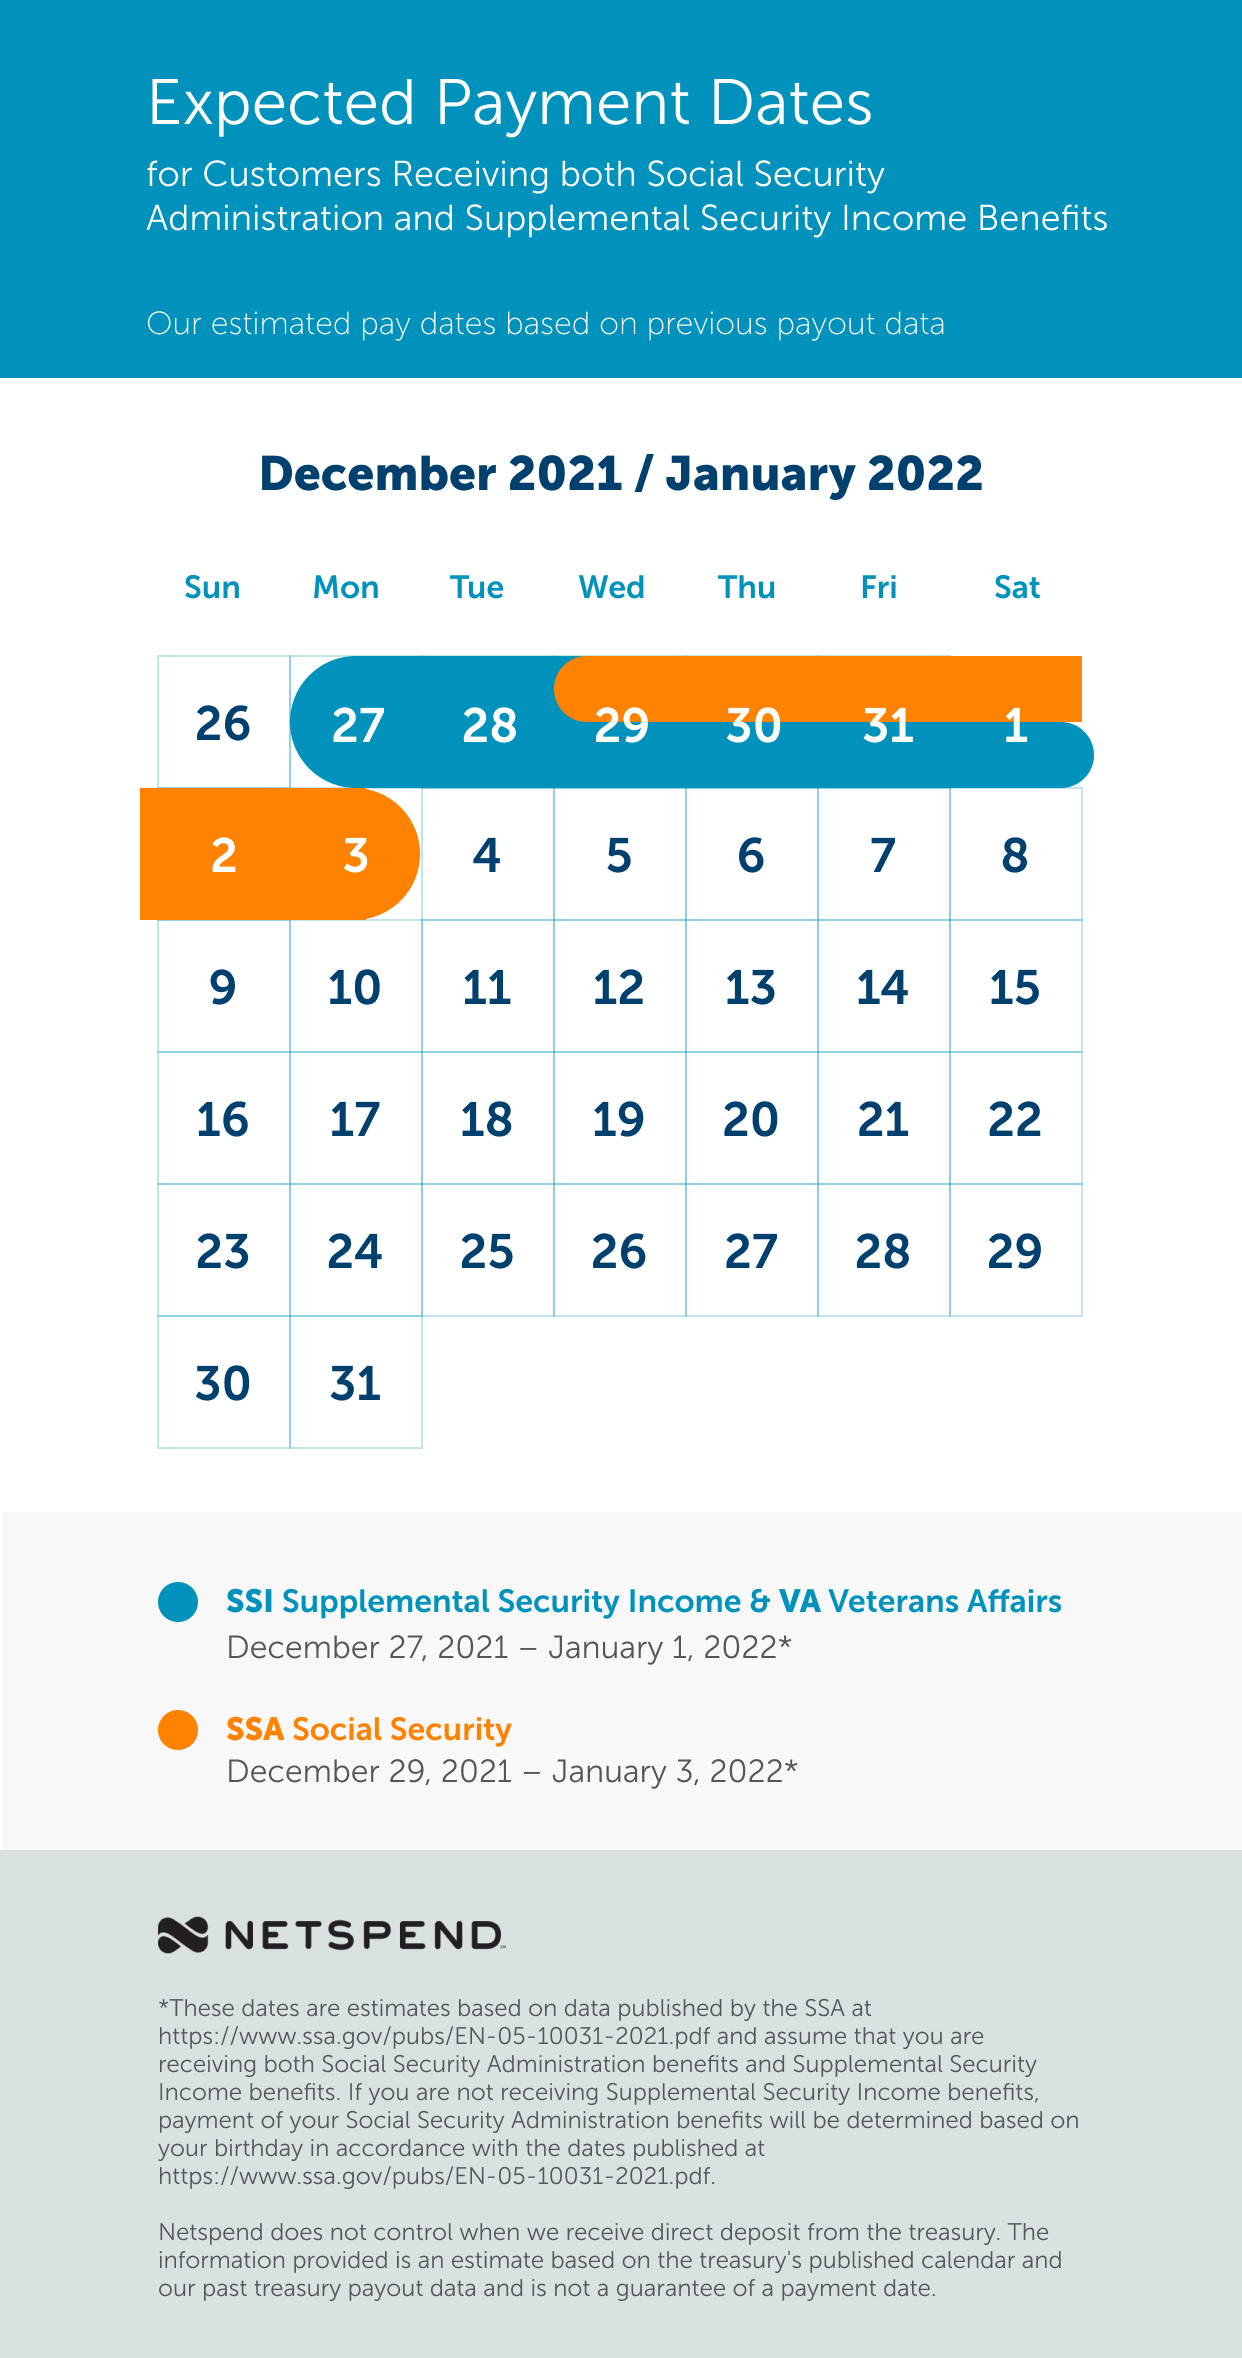 Netspend 2022 Calendar Benefits Payment Schedule: December 2021 - January 2022